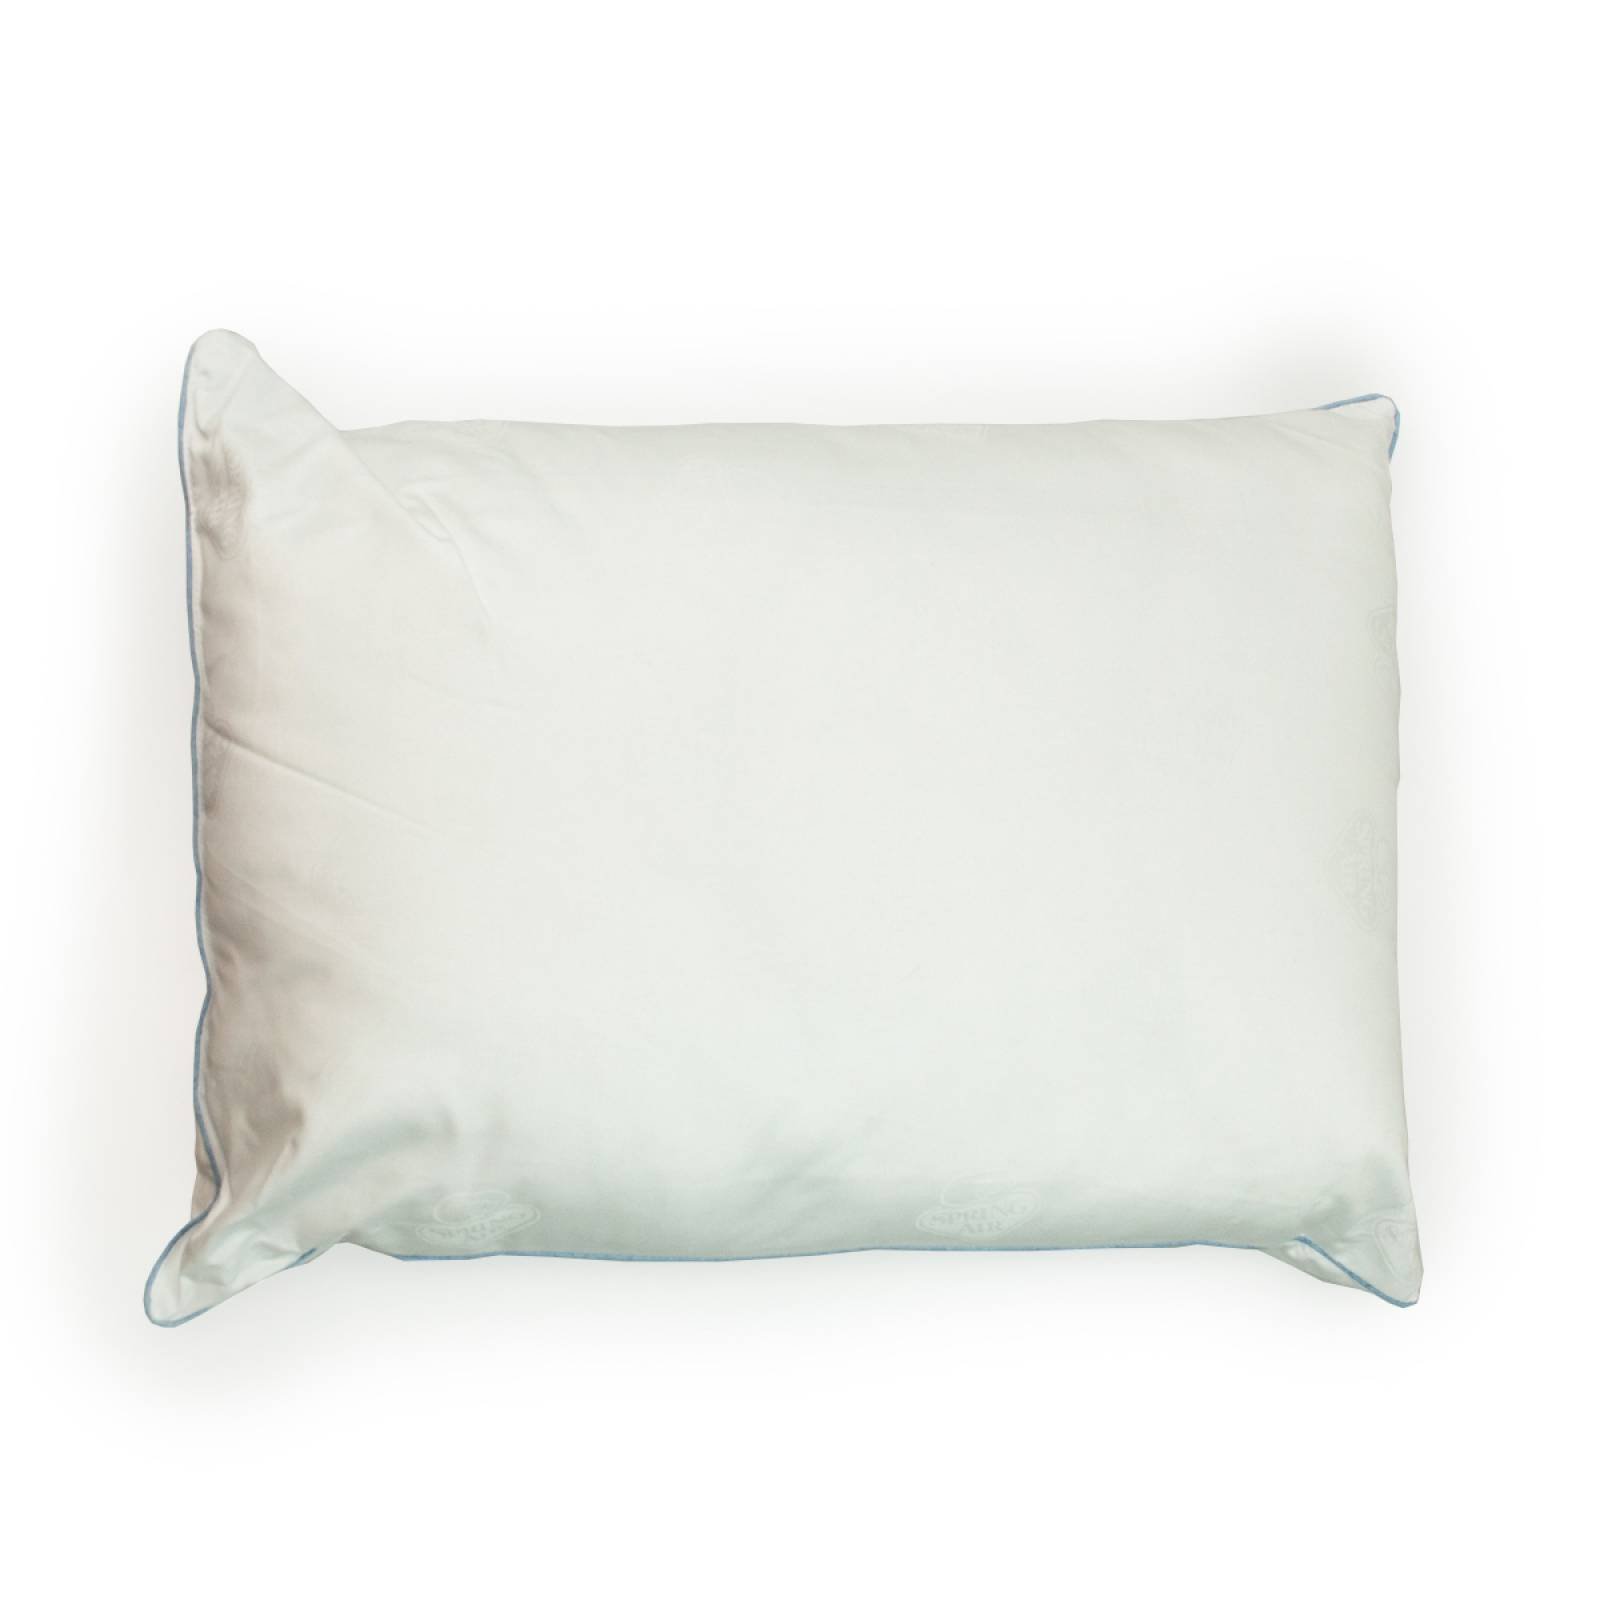 Almohada Spring Air Premium Pillow - Muy Firme Estándar